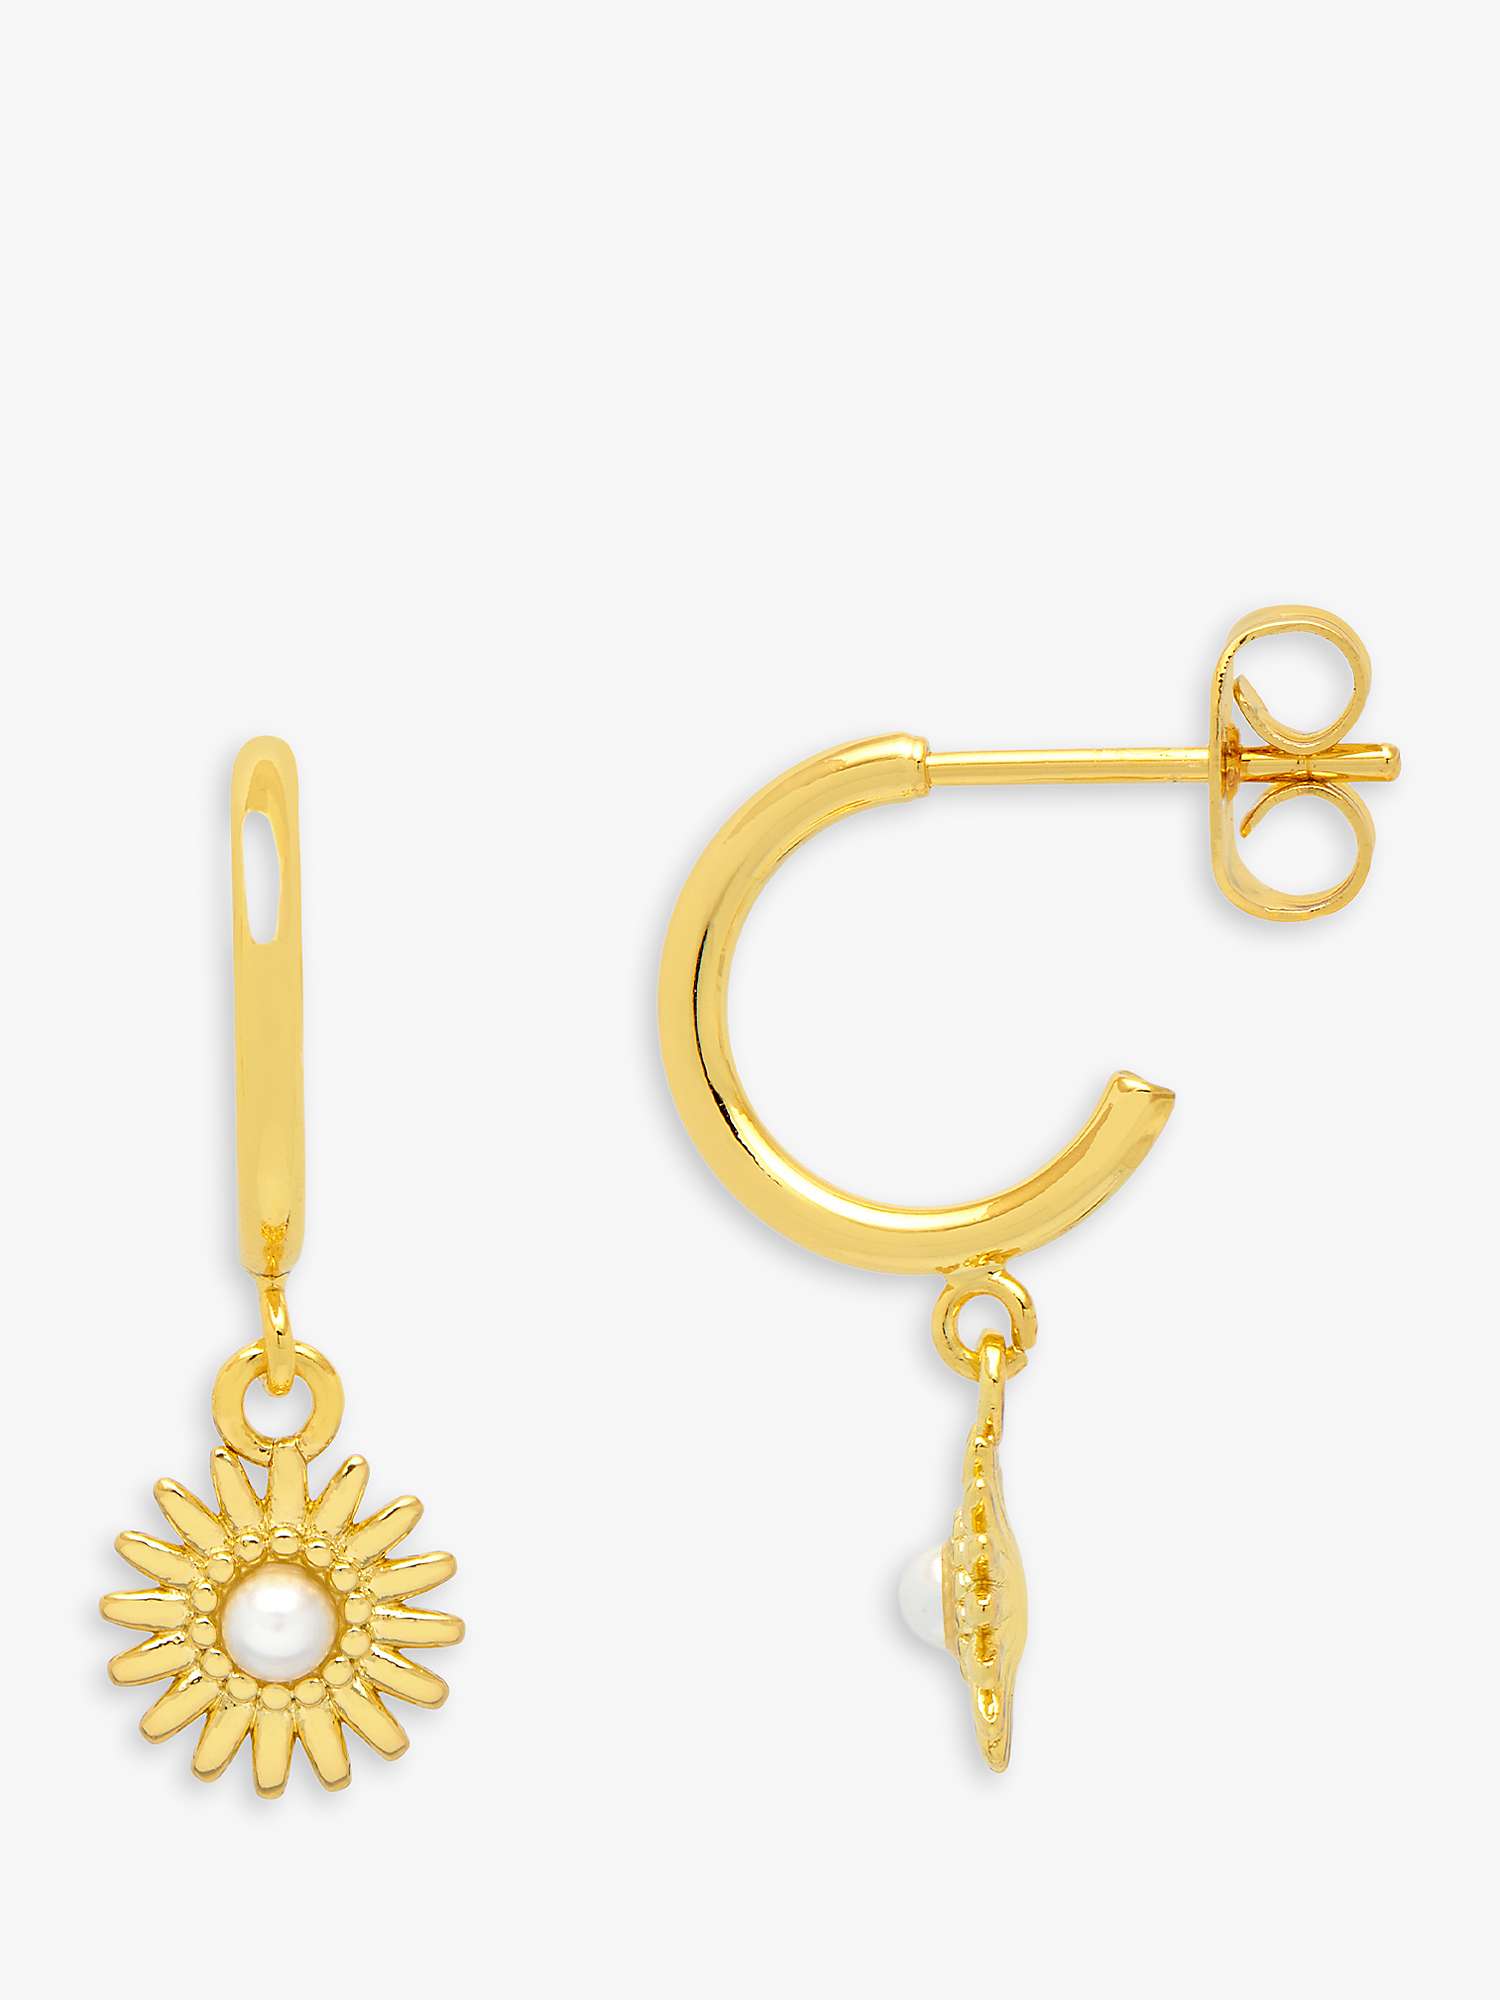 Buy Estella Bartlett Wonderful Mum Flower Drop Hoop Earrings, Gold Online at johnlewis.com